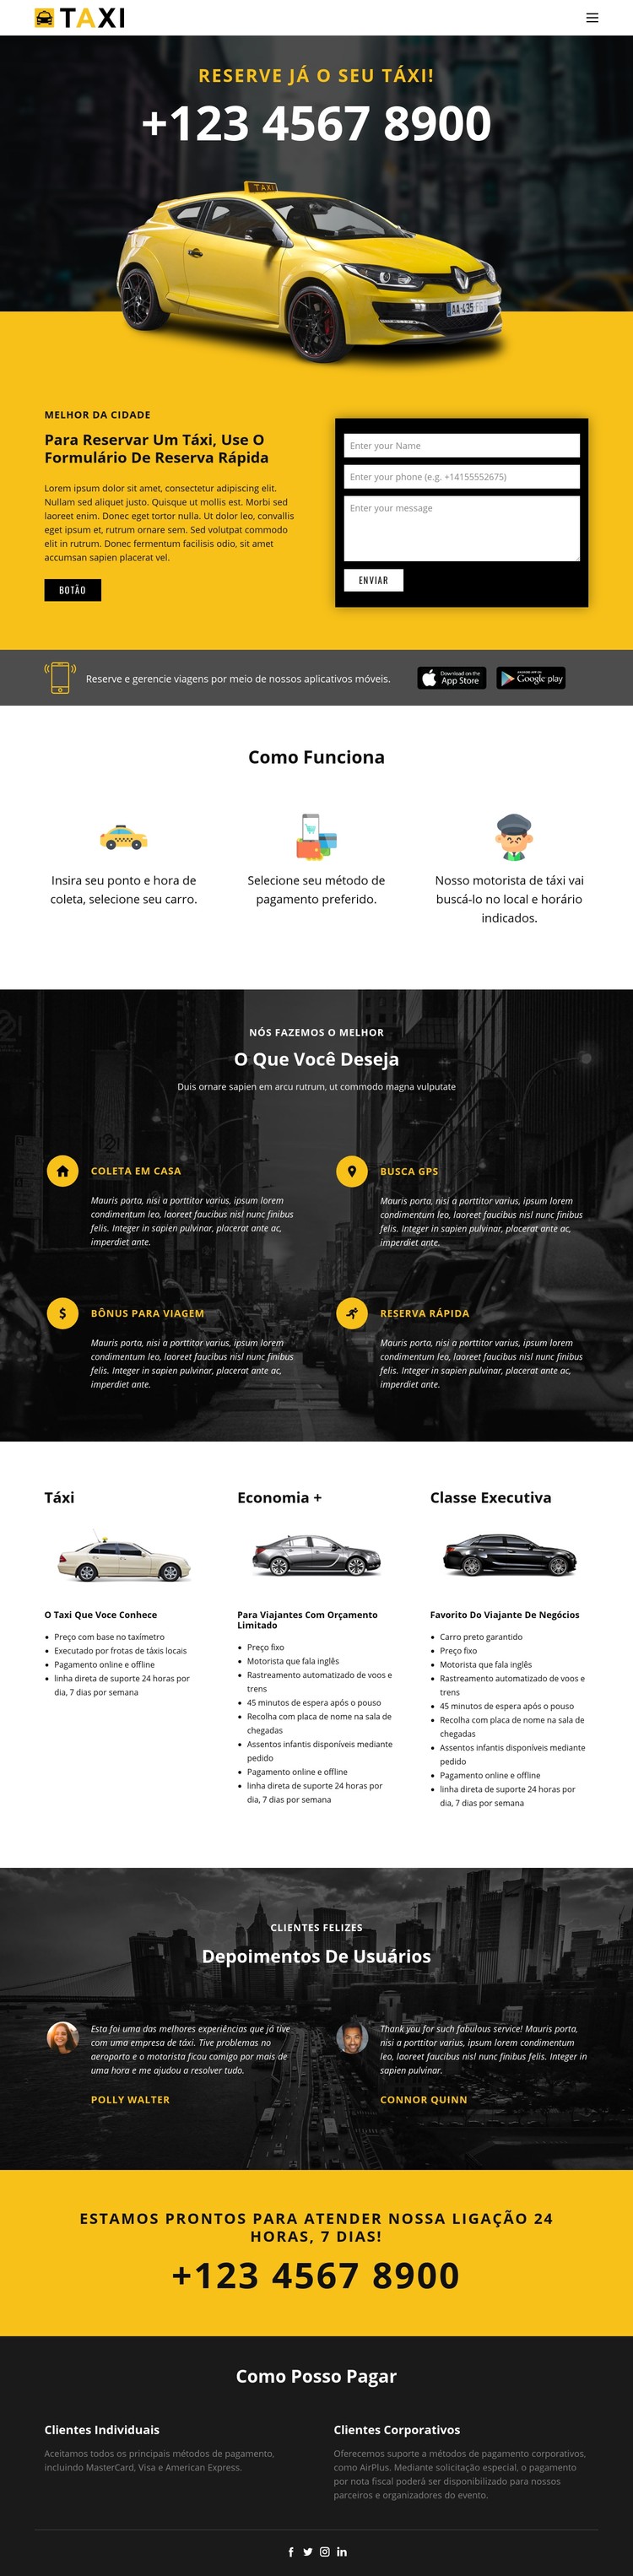 Carros táxi mais rápidos Template CSS